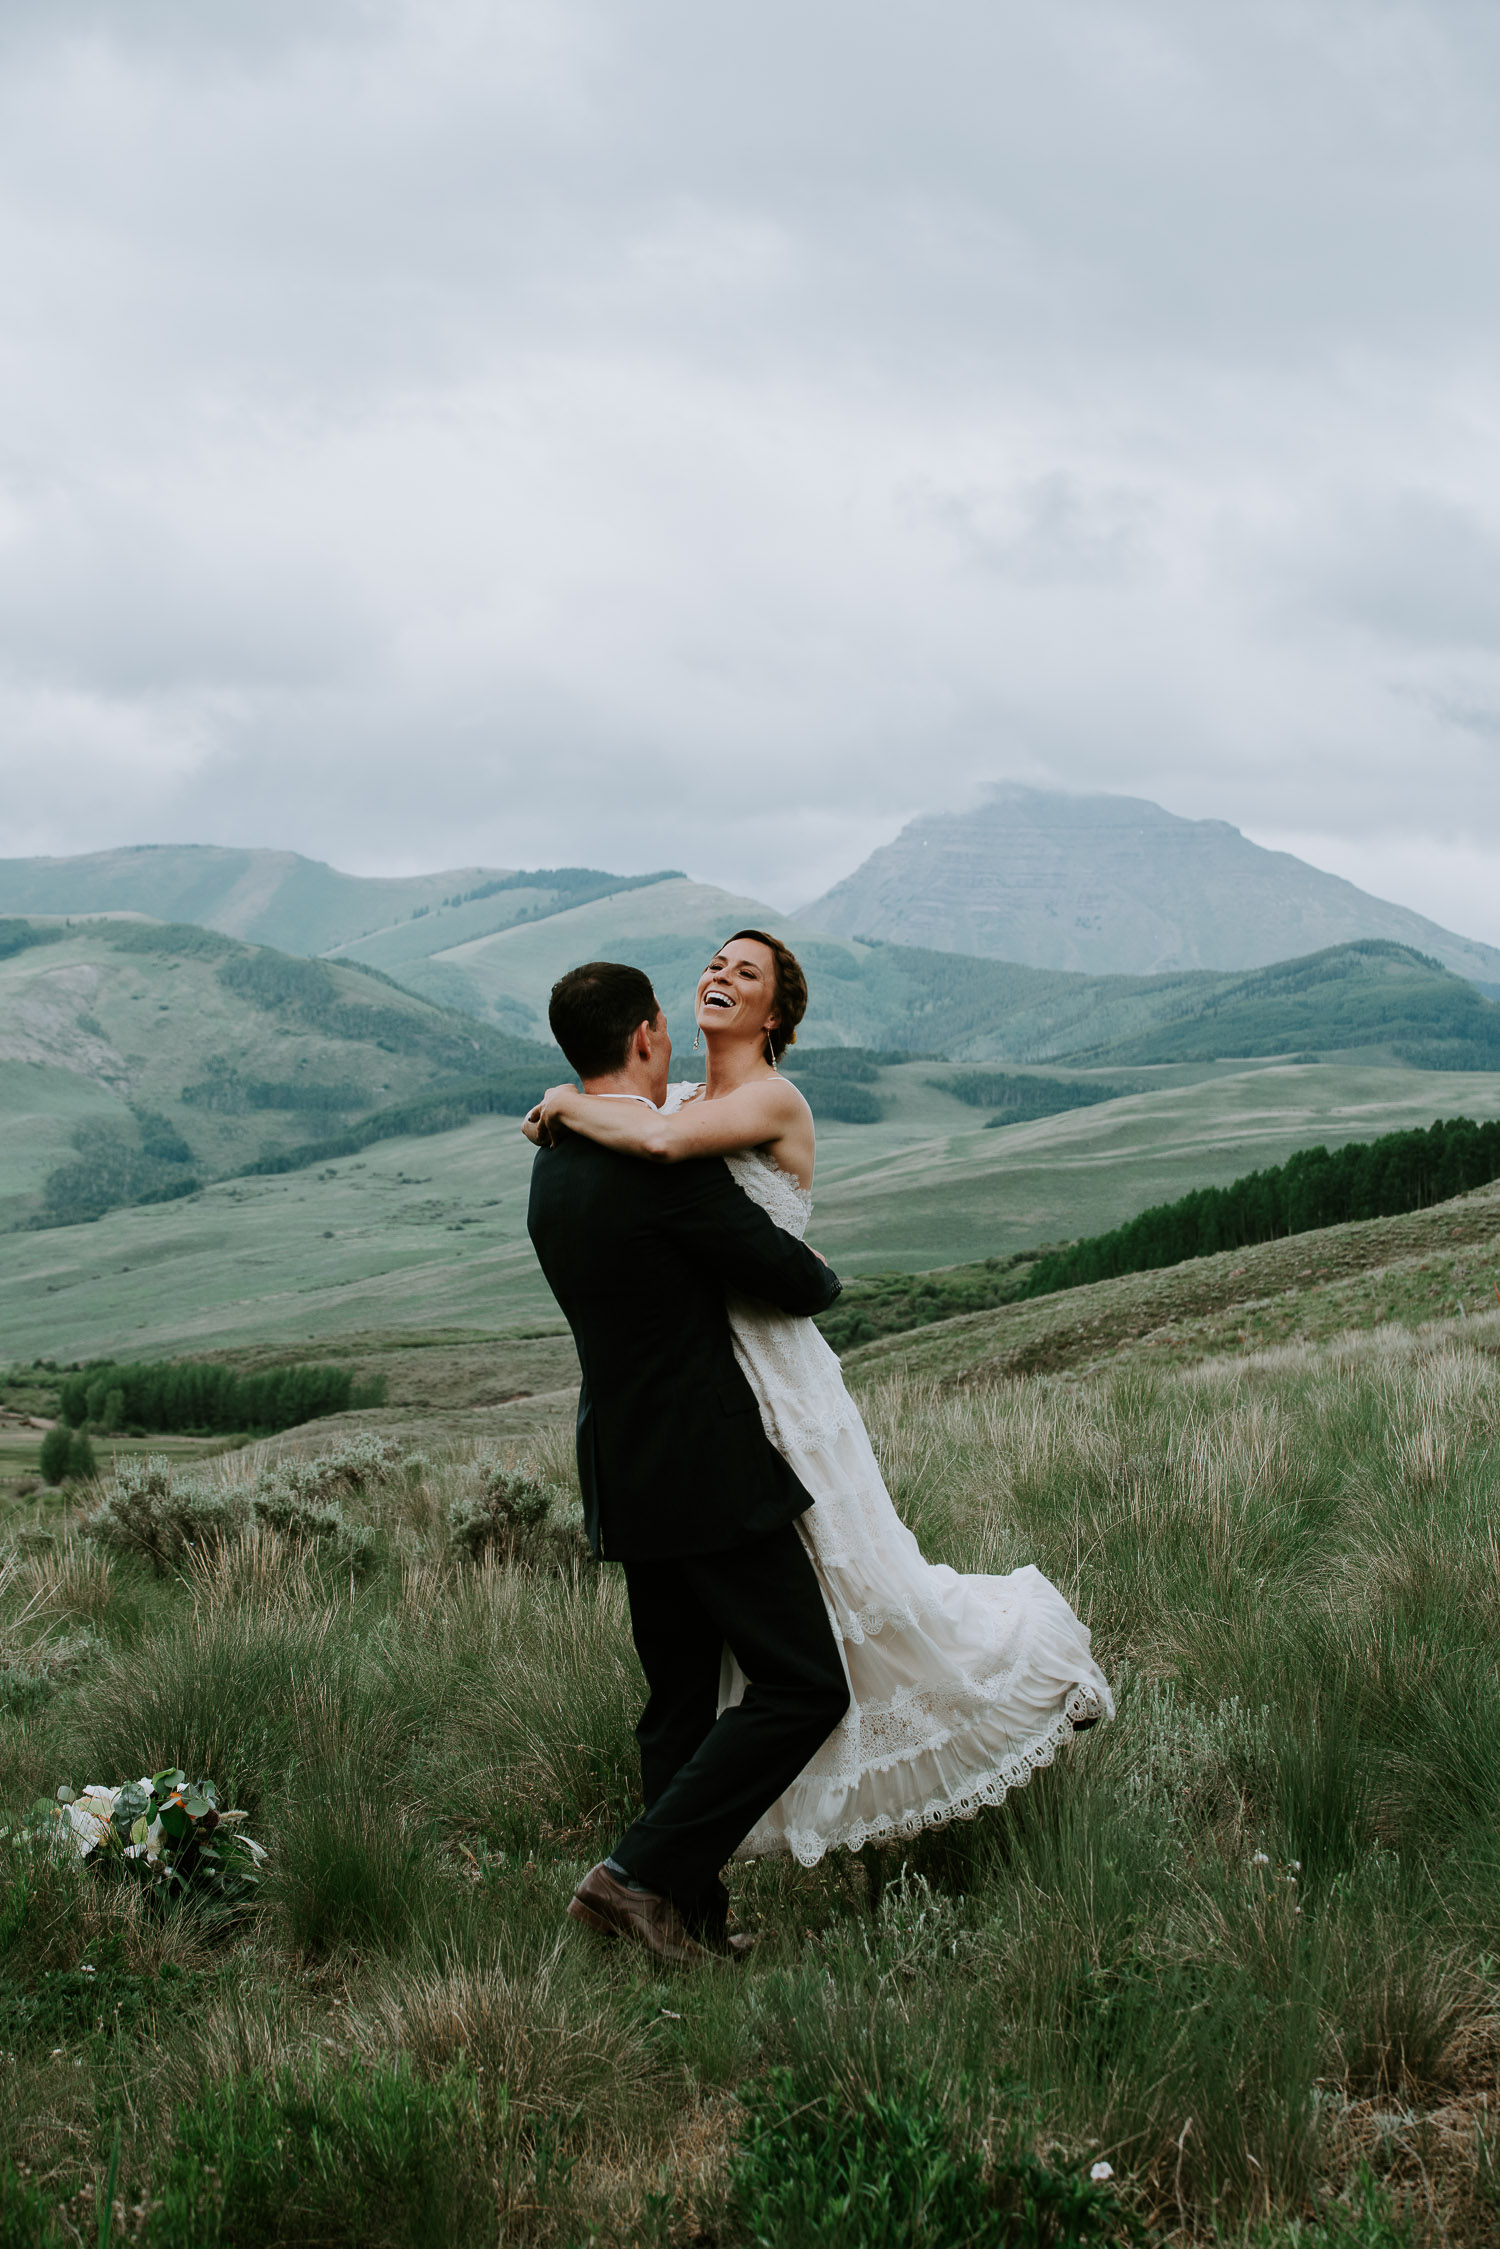 Colorado Wedding Photography, Intimate Wedding, Colorado elopement photography, crested butte wedding, bride groom dancing